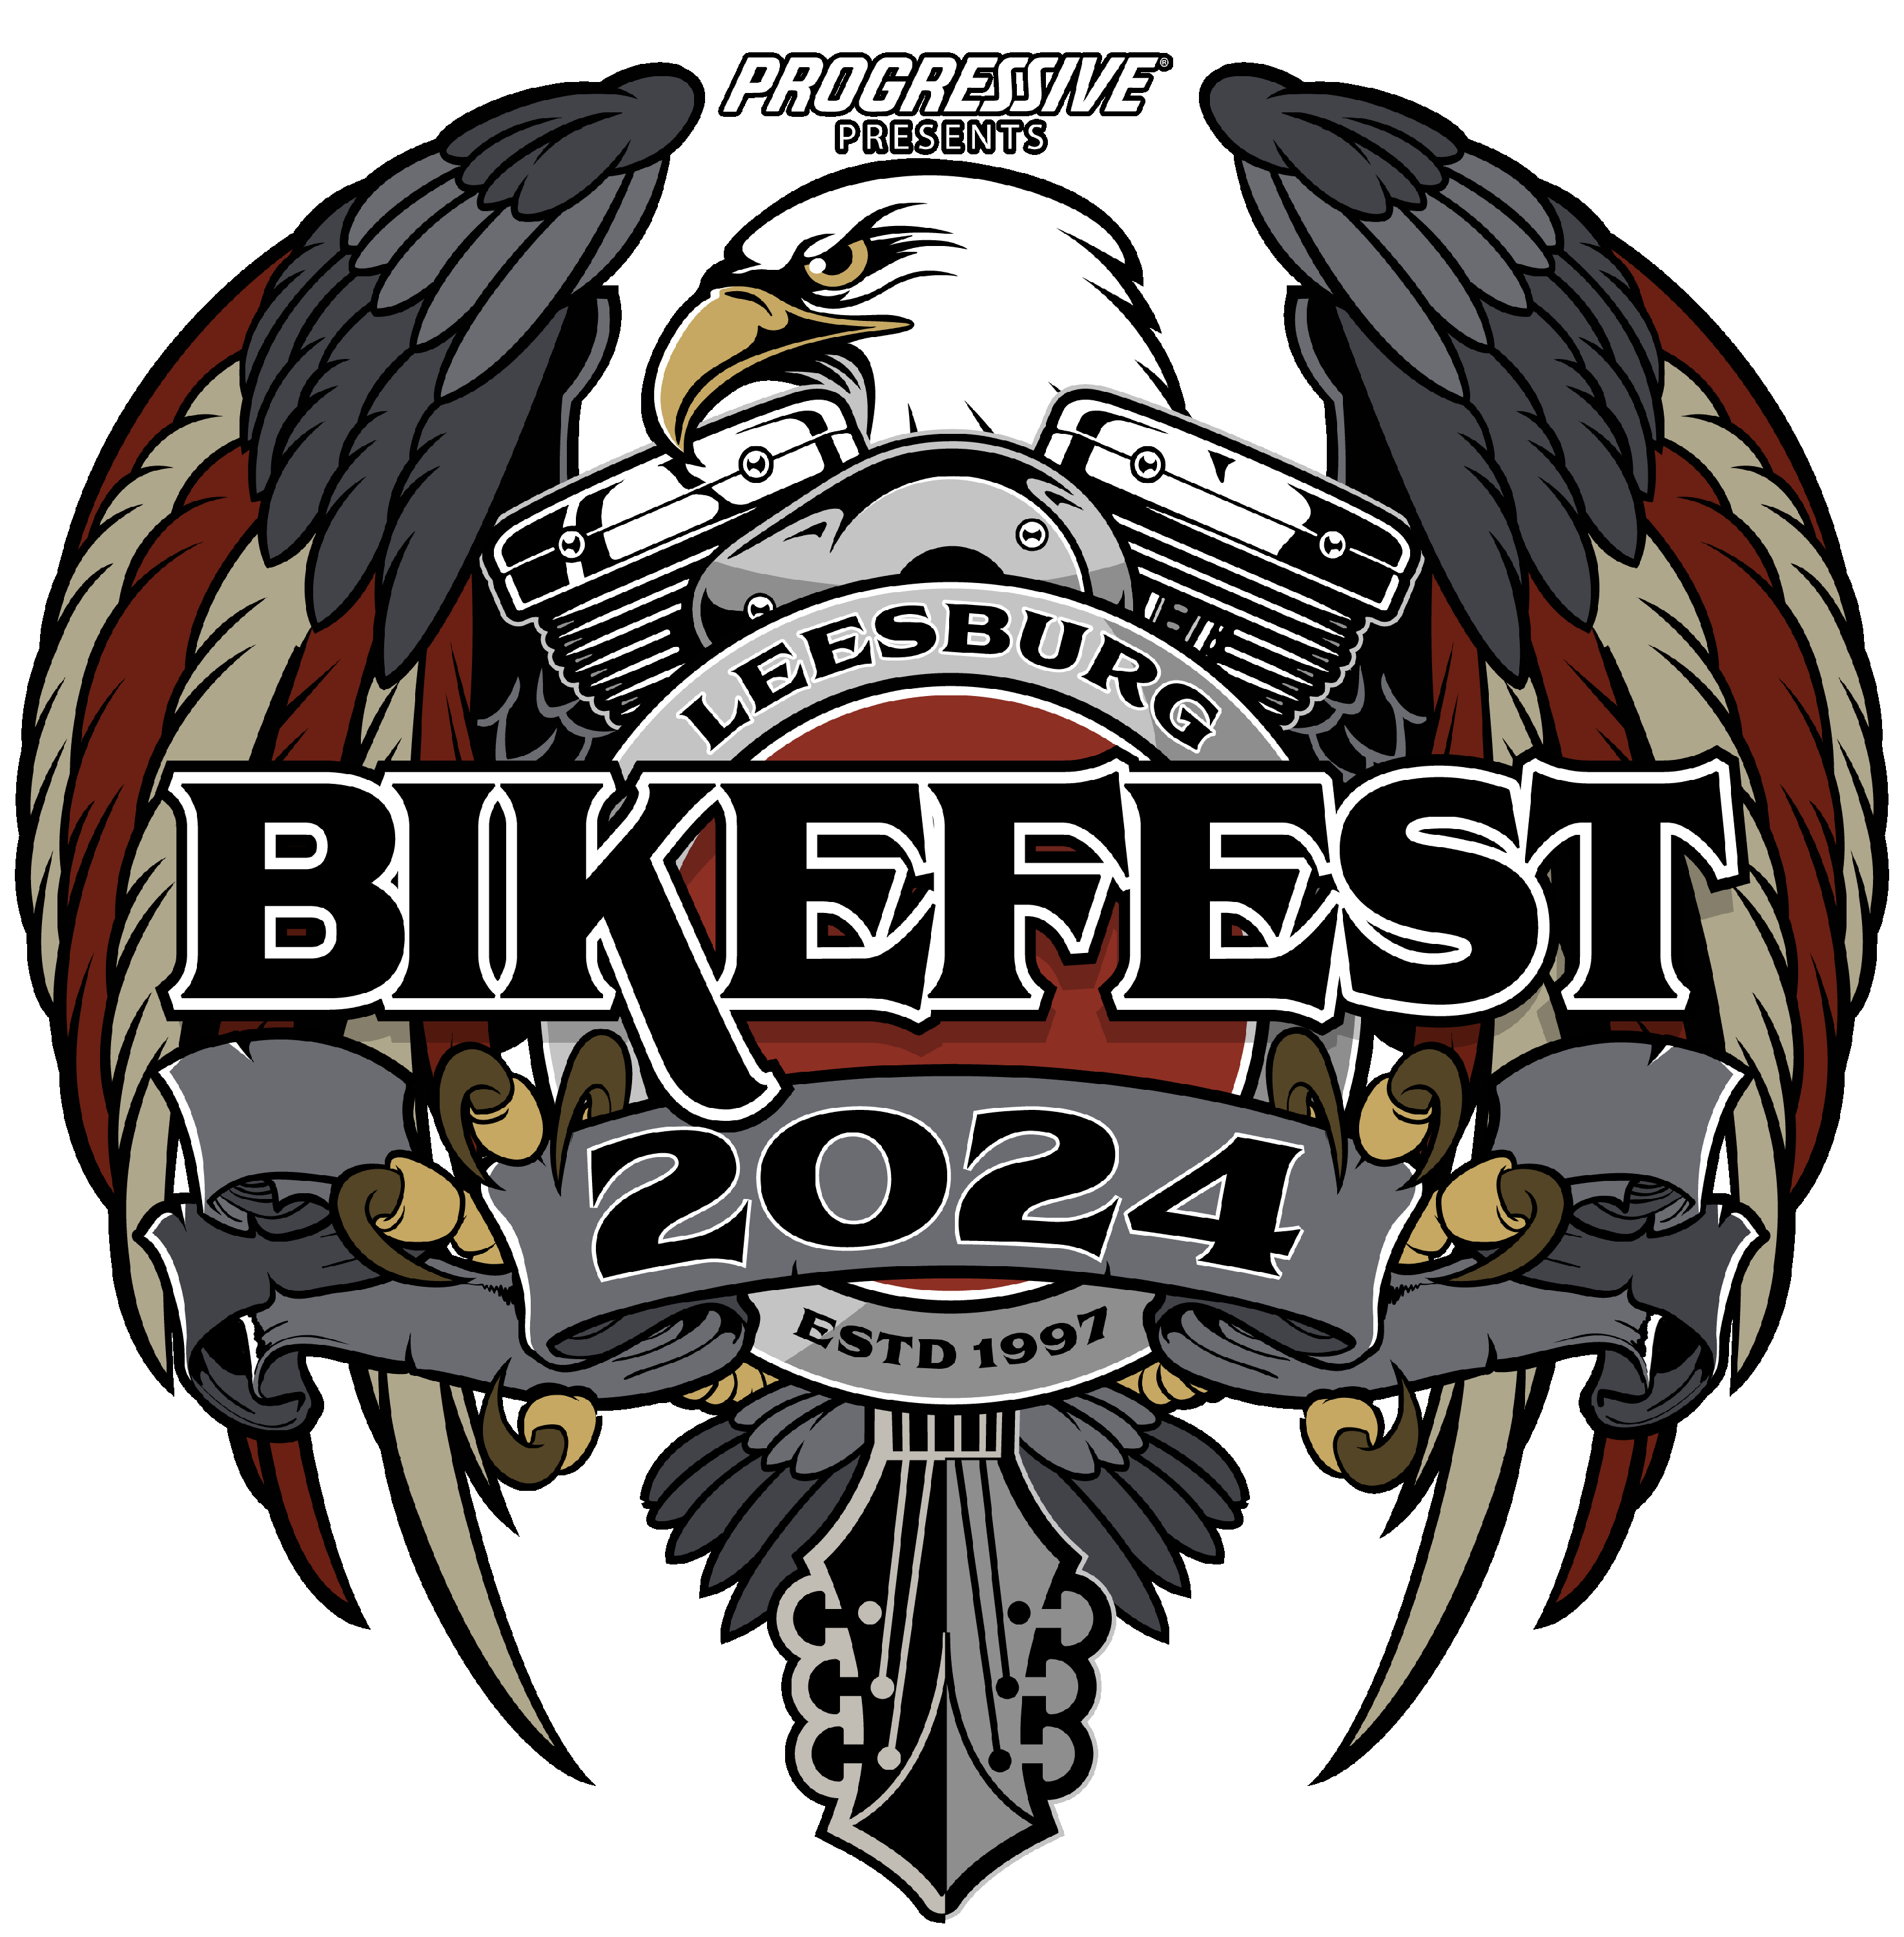 Leesburg Bikefest Vendor Application